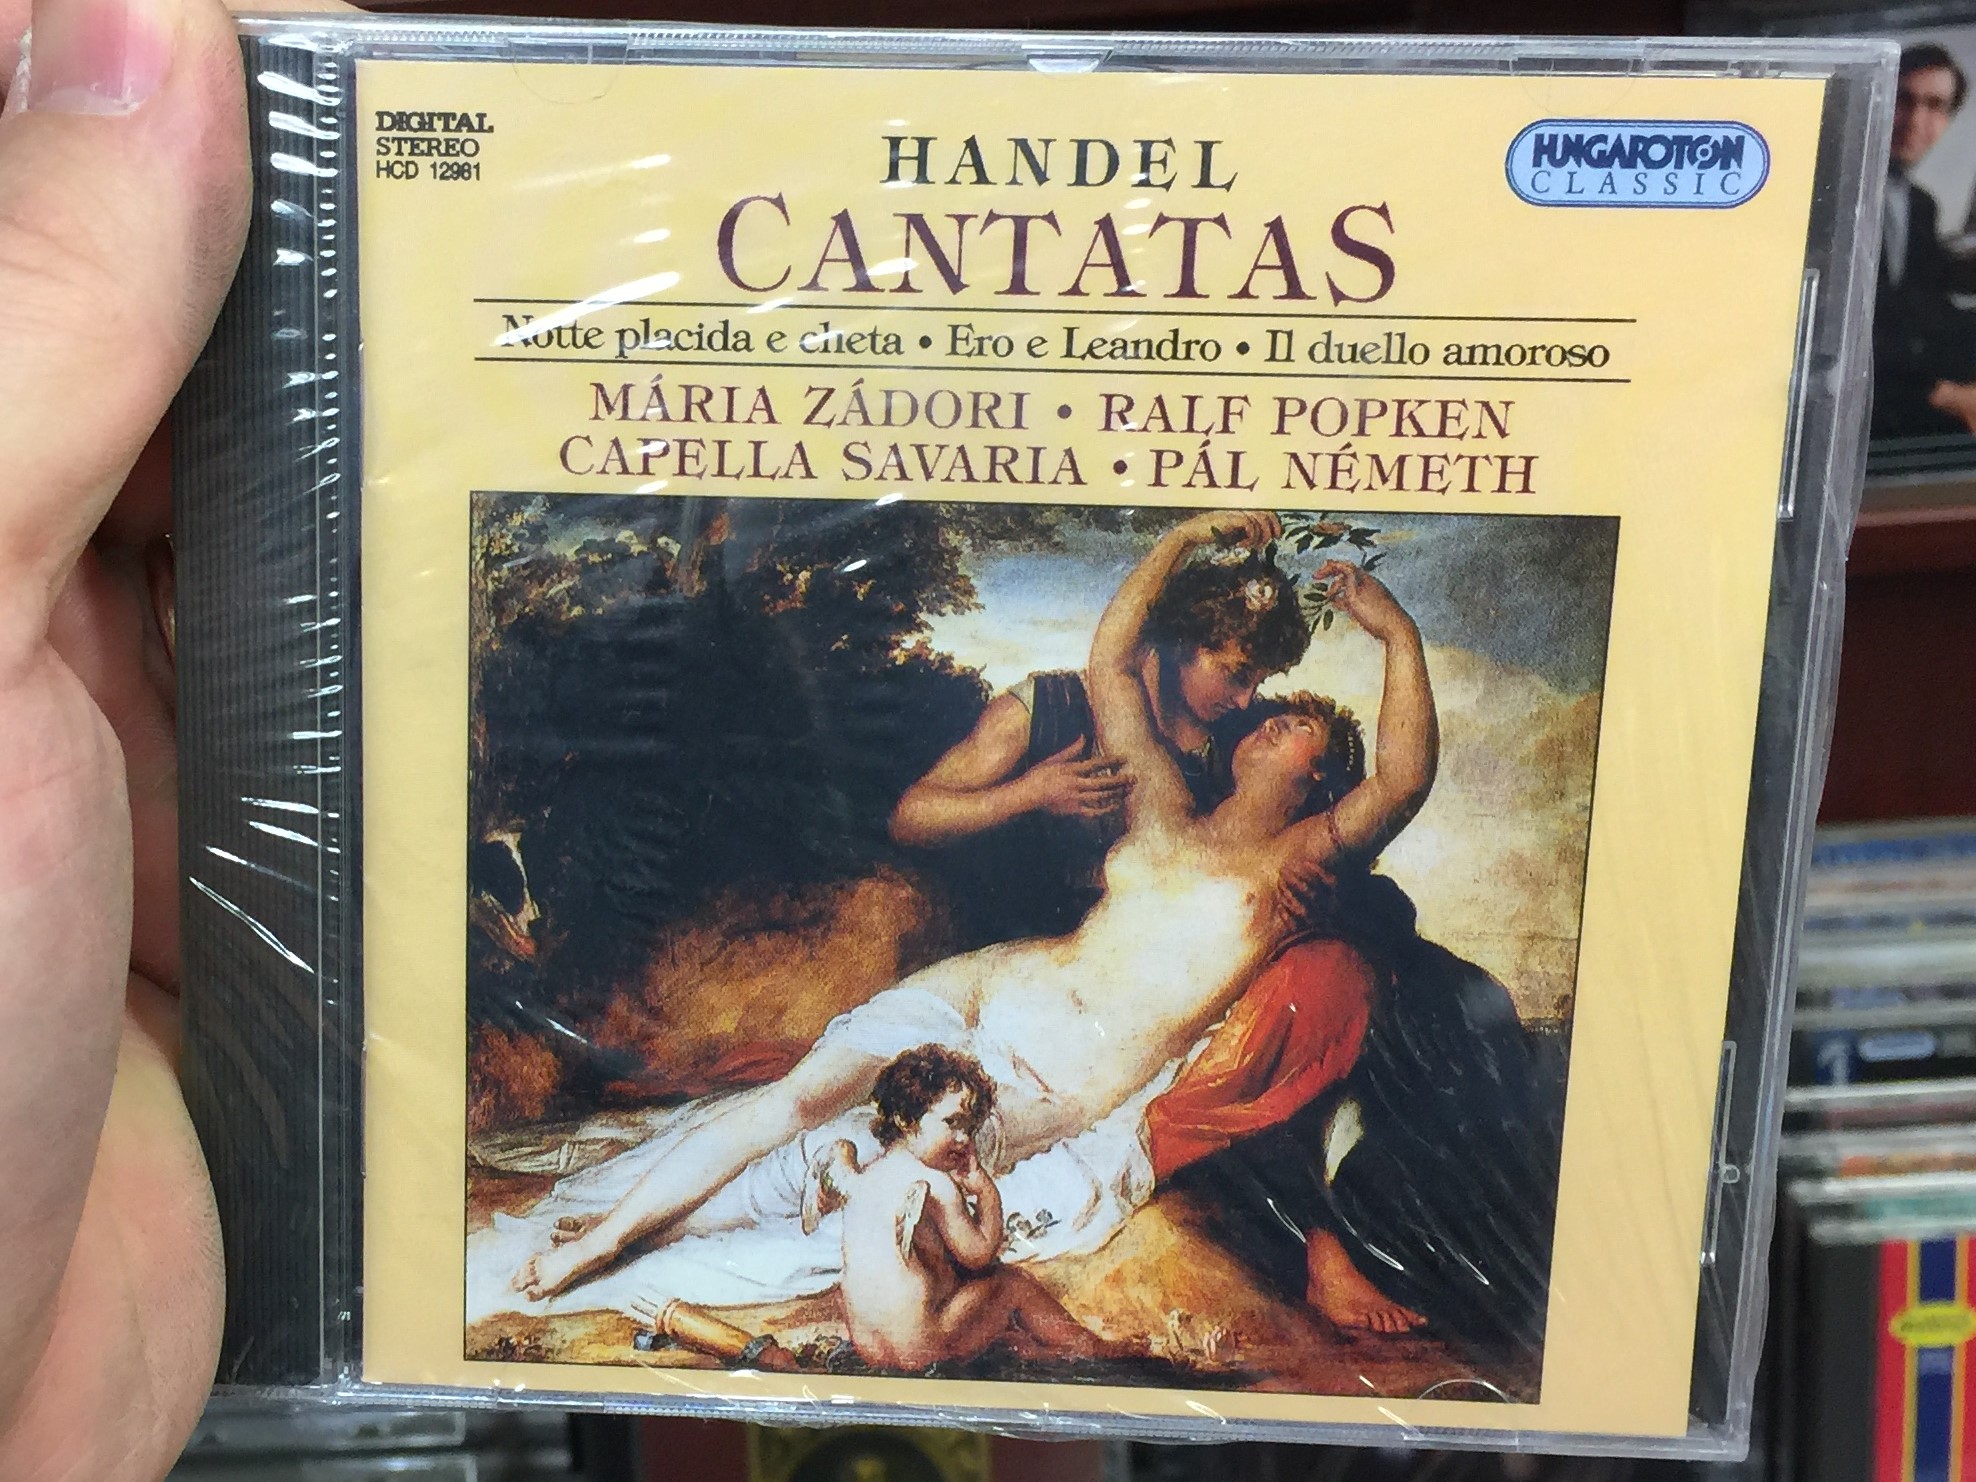 handel-cantatas-notte-placida-e-cheta-ero-a-leandro-il-duello-amoroso-m-ria-z-dori-ralf-popken-capella-savaria-p-l-n-meth-hungaroton-classic-audio-cd-1995-stereo-hcd-12981-1-.jpg